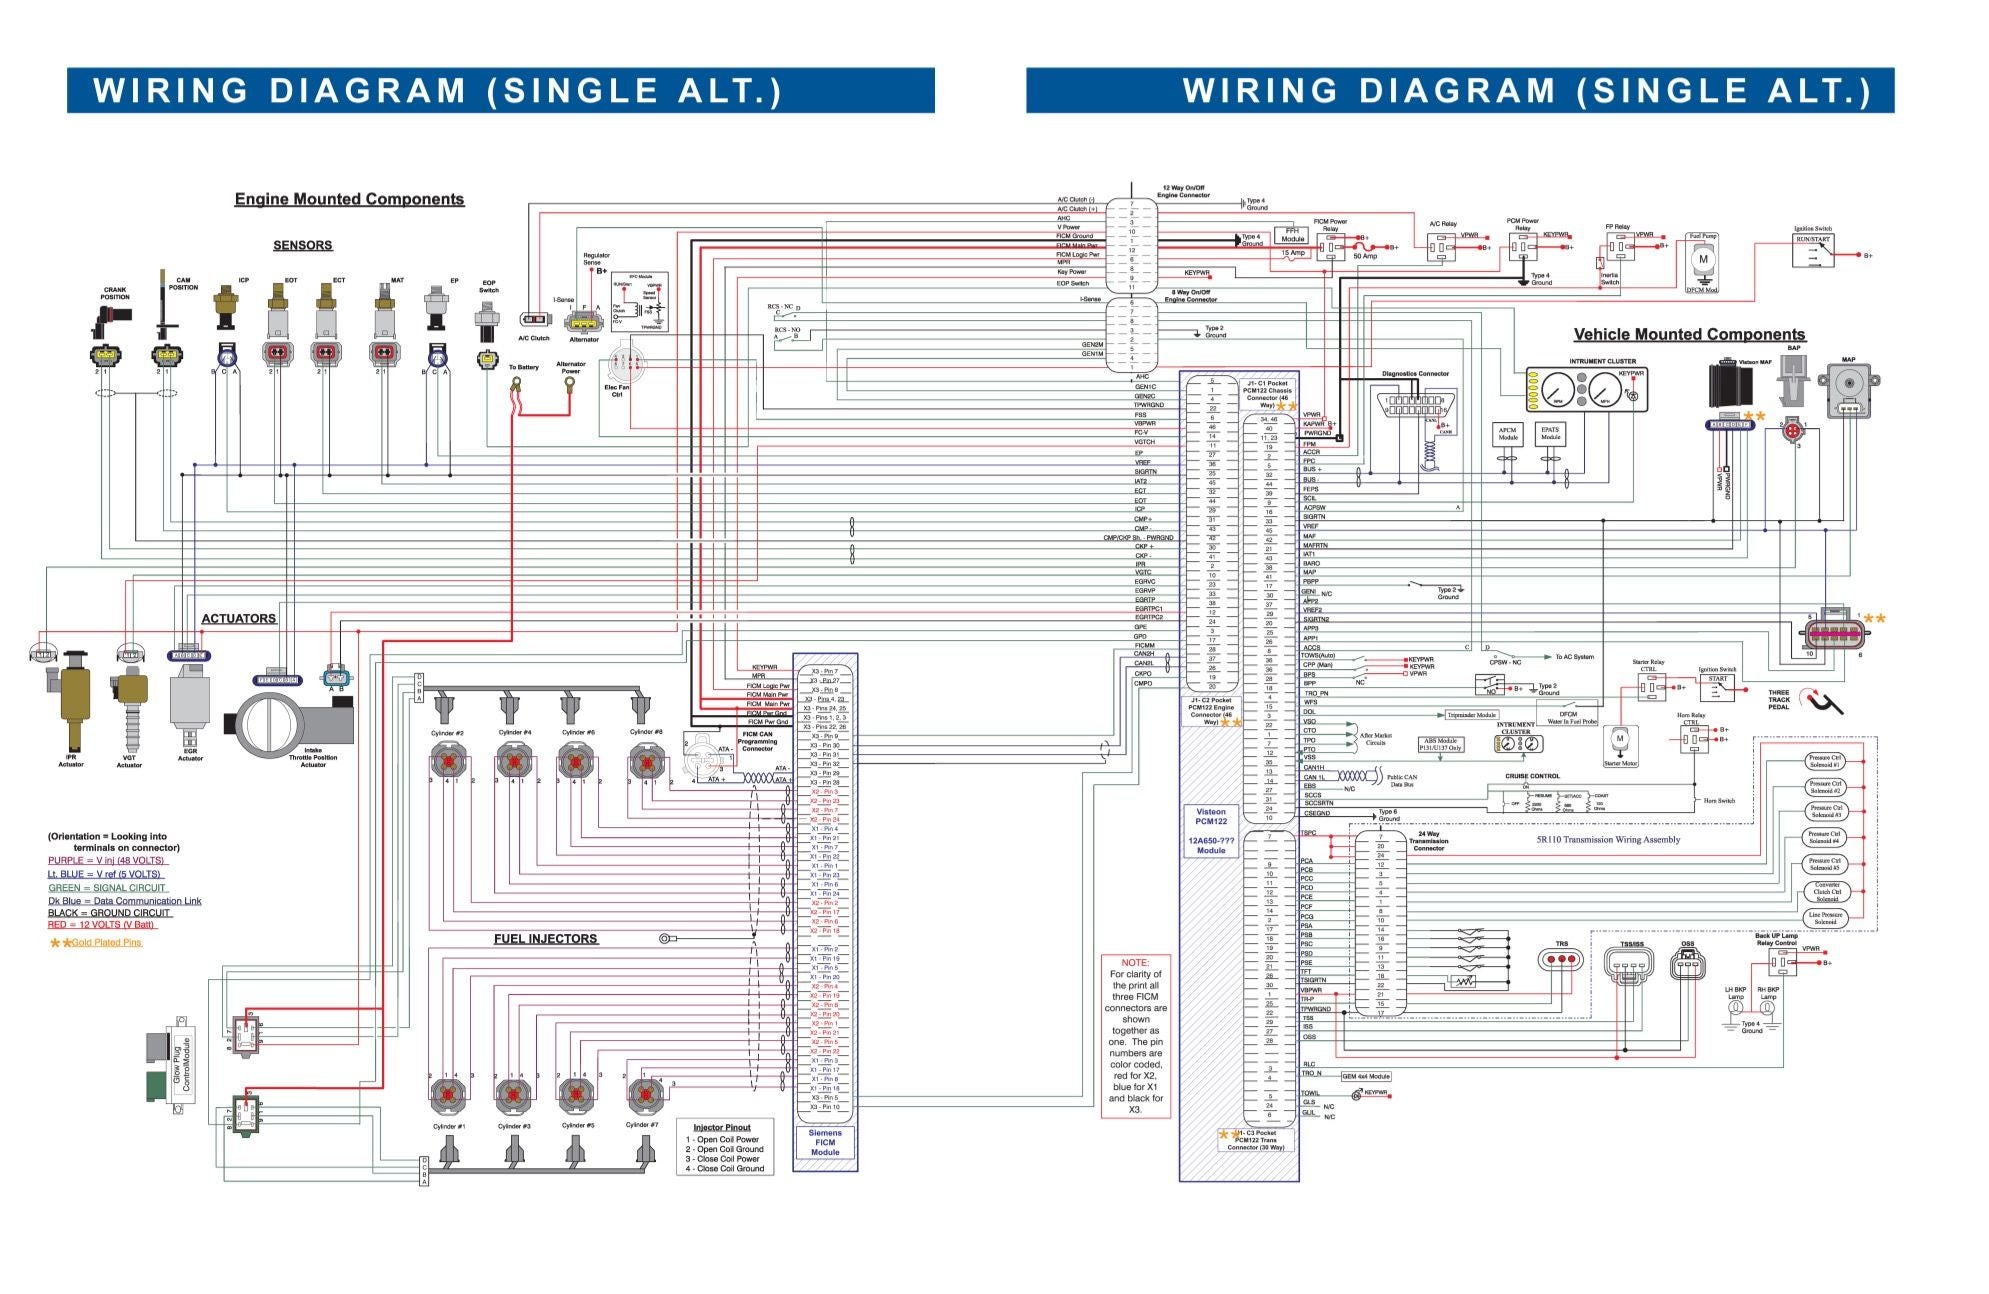 Ford 6.0 Diesel Ficm Wiring Diagram.